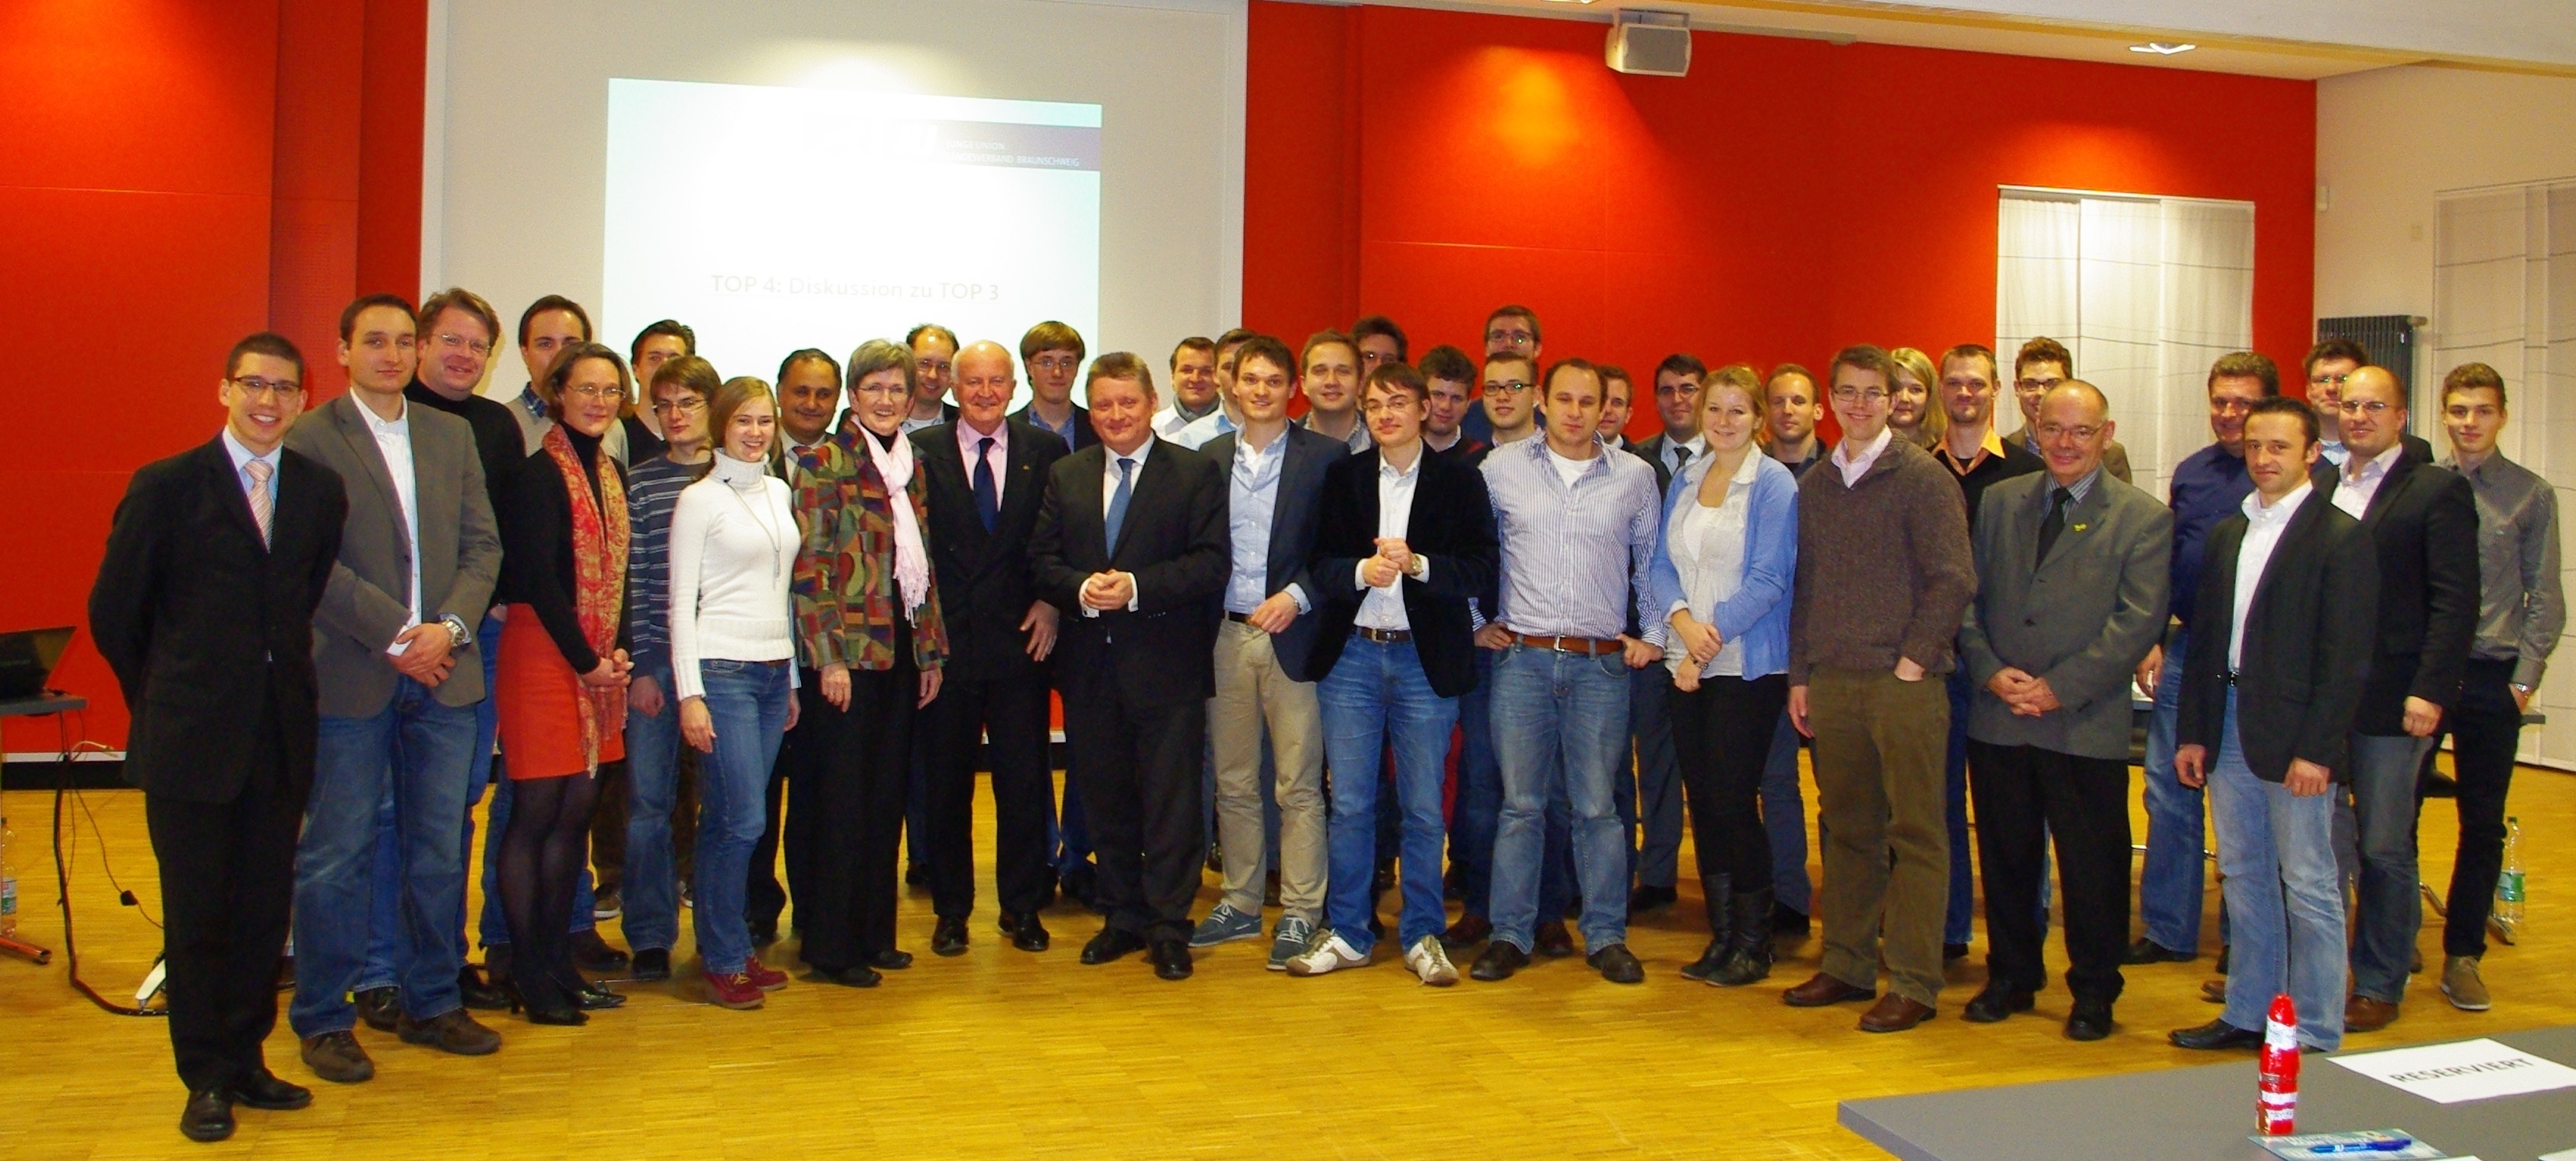 Teilnehmer der Metropolkonferenz mit Hermann Gröhe MdB